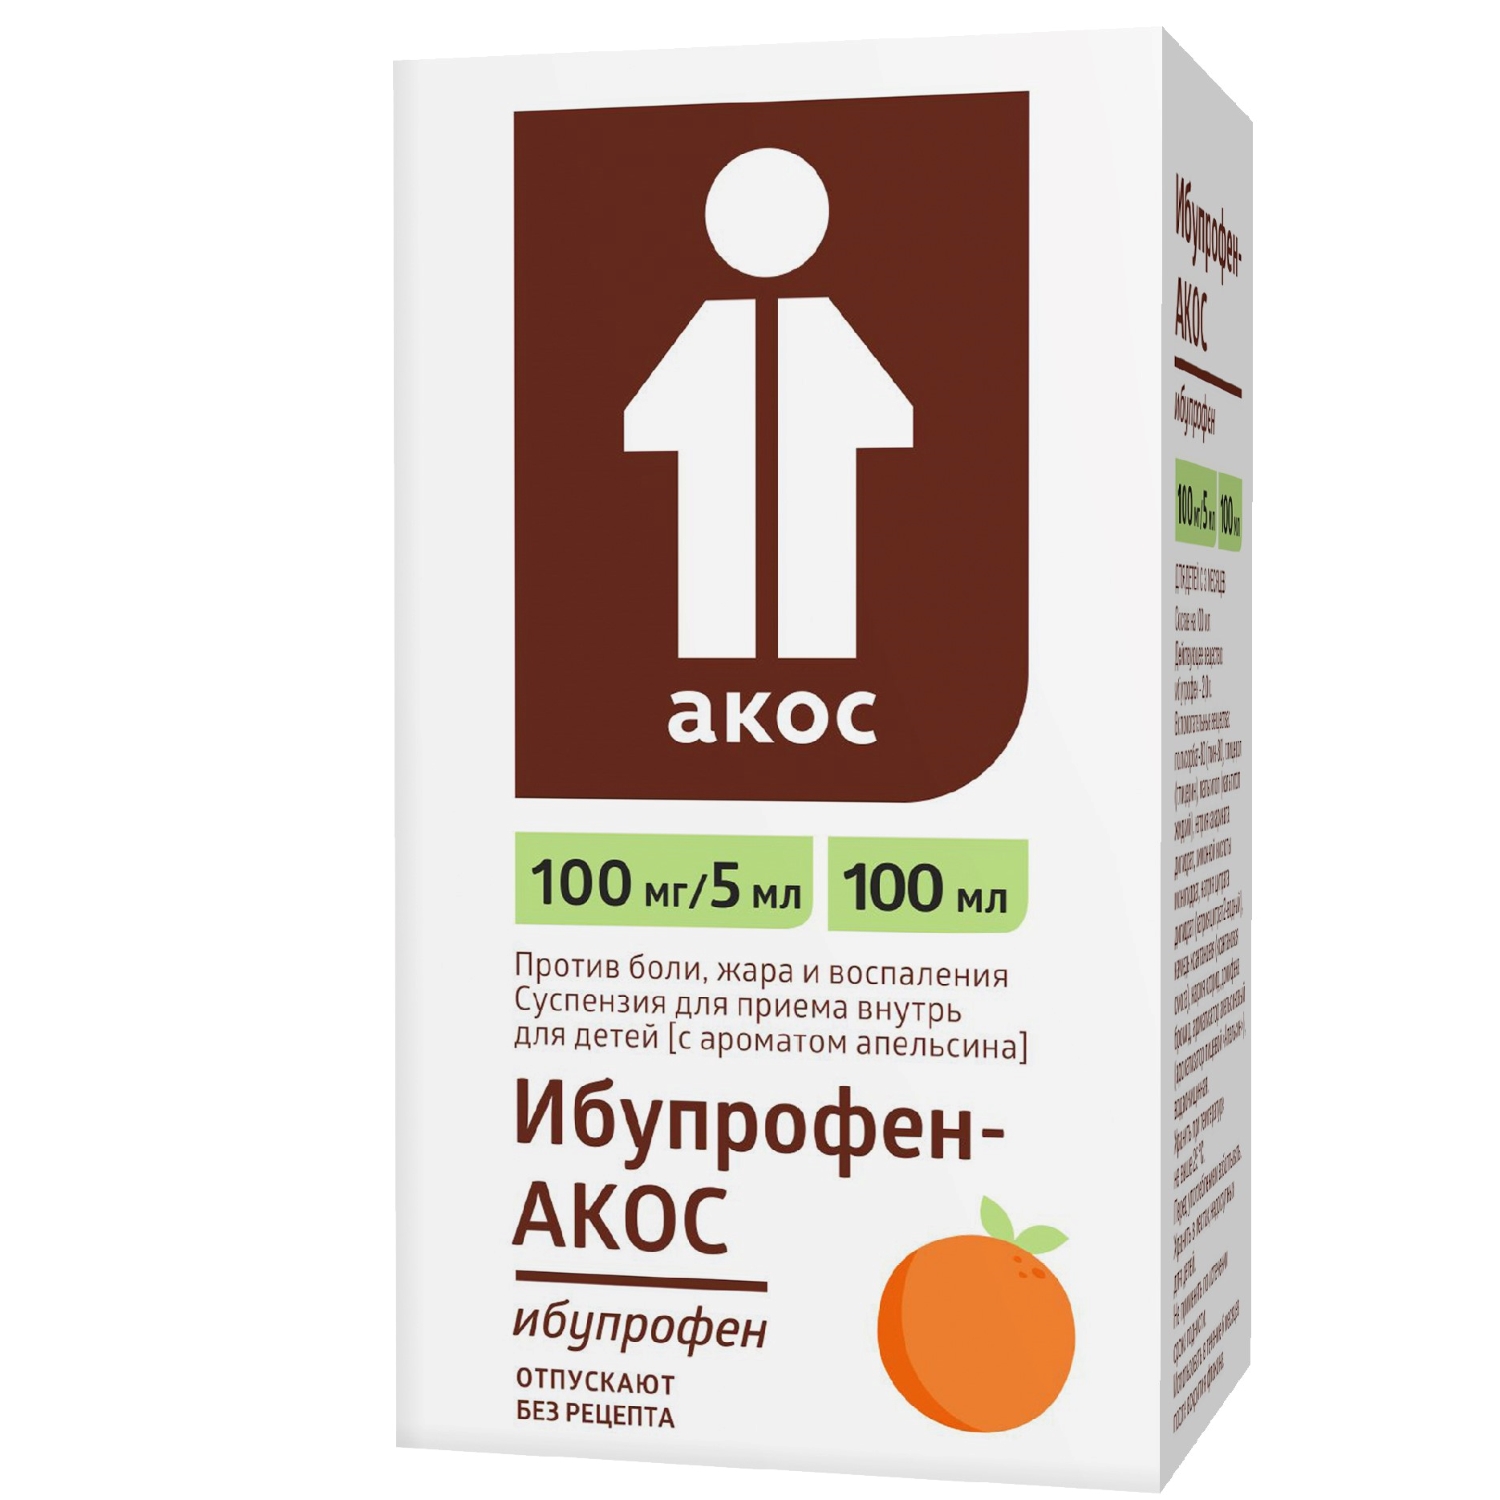 Купить Ибупрофен АКОС сусп.для детей 100мг/5мл 100мл апельсин, Синтез